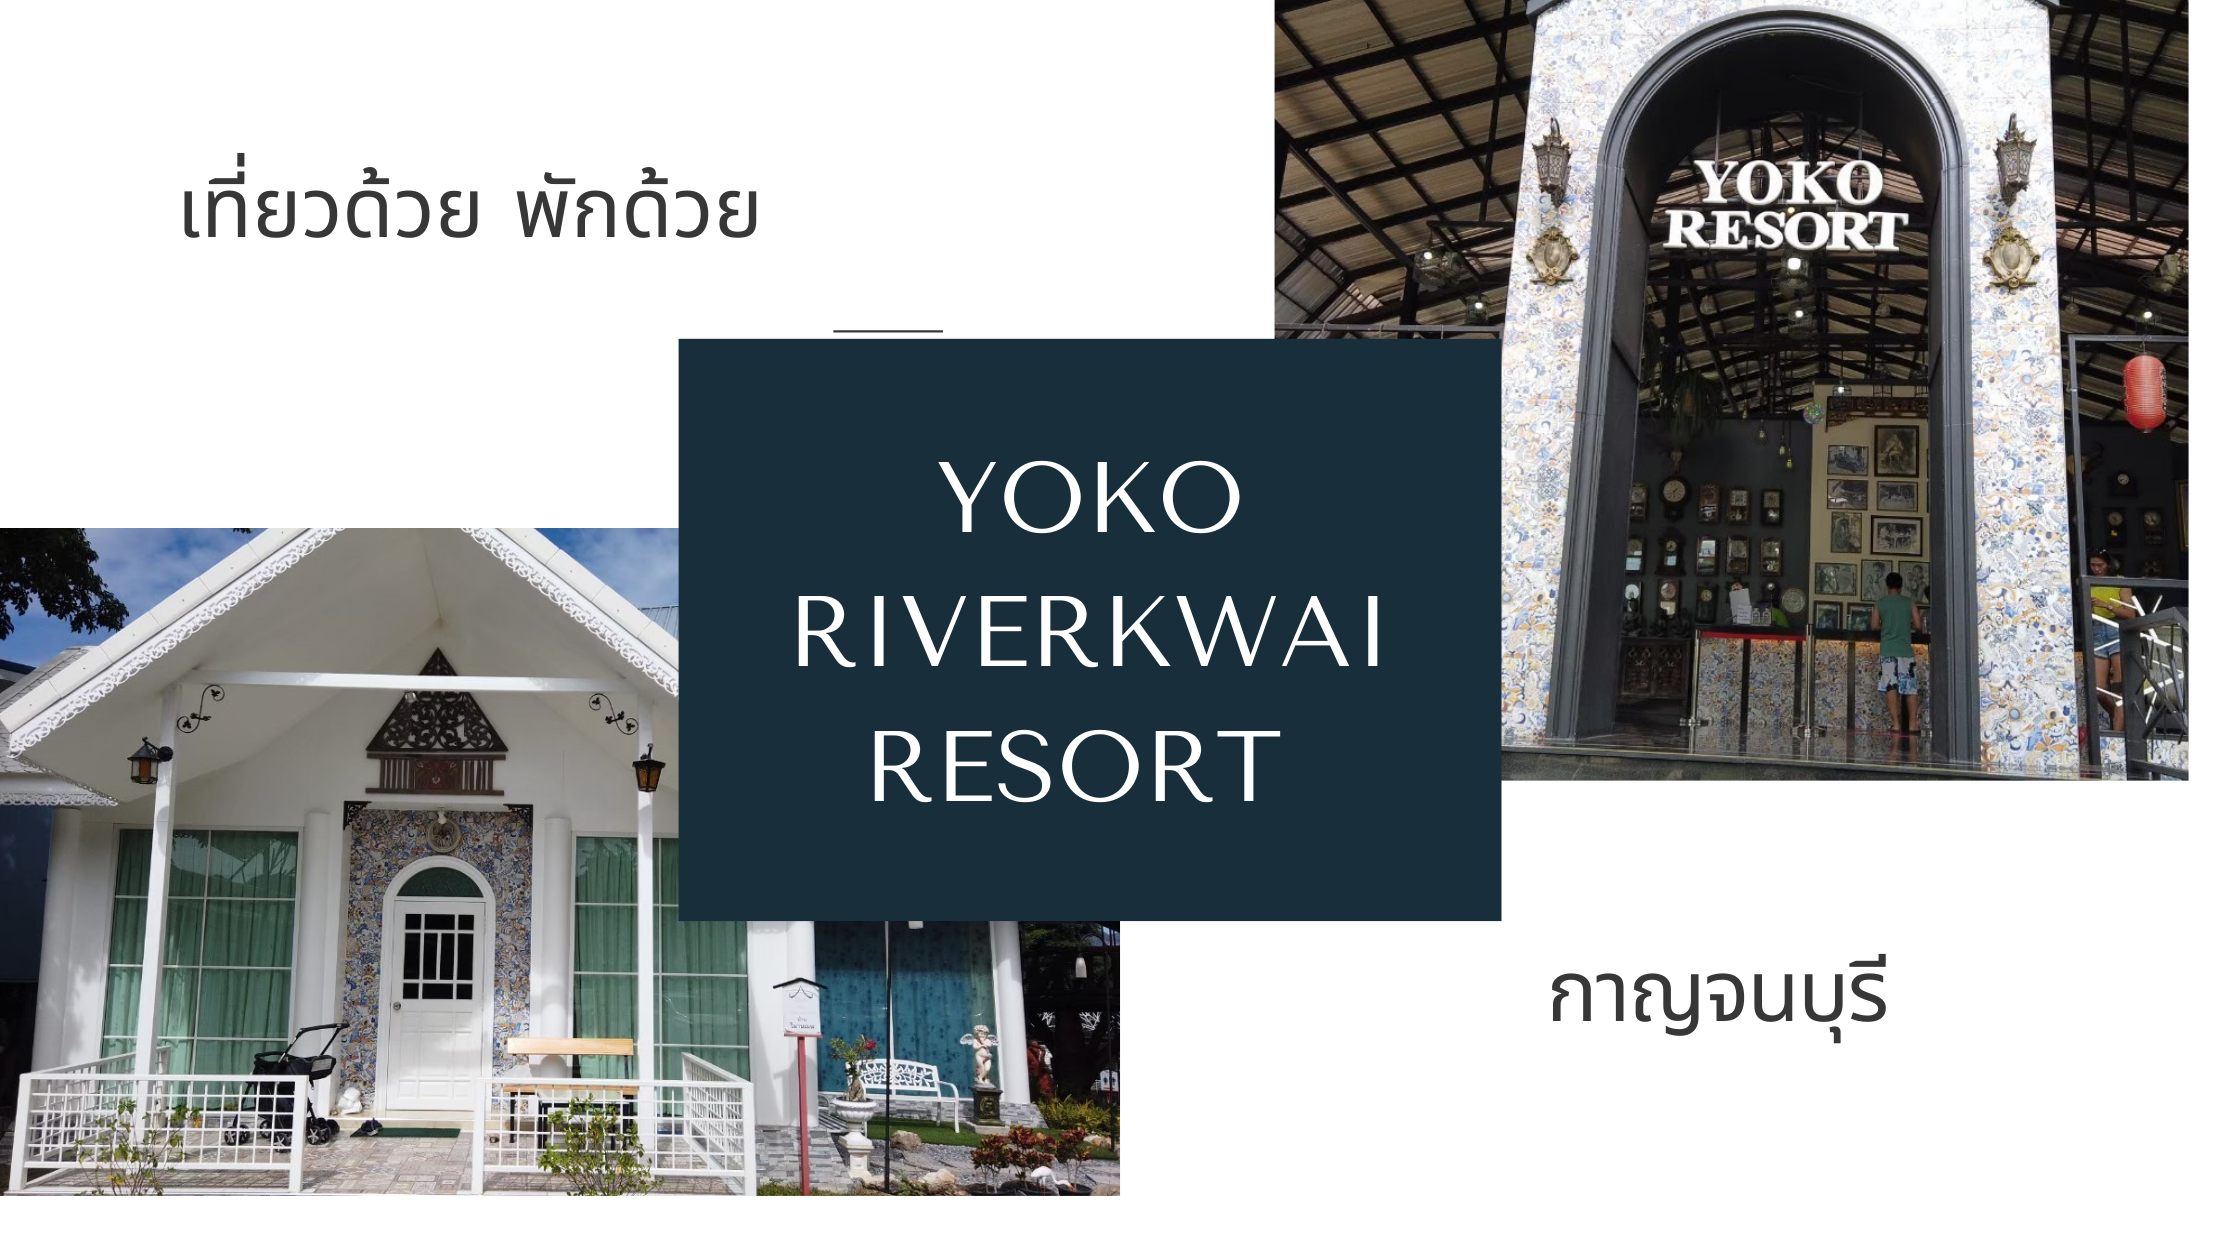 เที่ยวด้วย พักด้วยกับ Yoko RiverKwai Resort กาญจนบุรี 